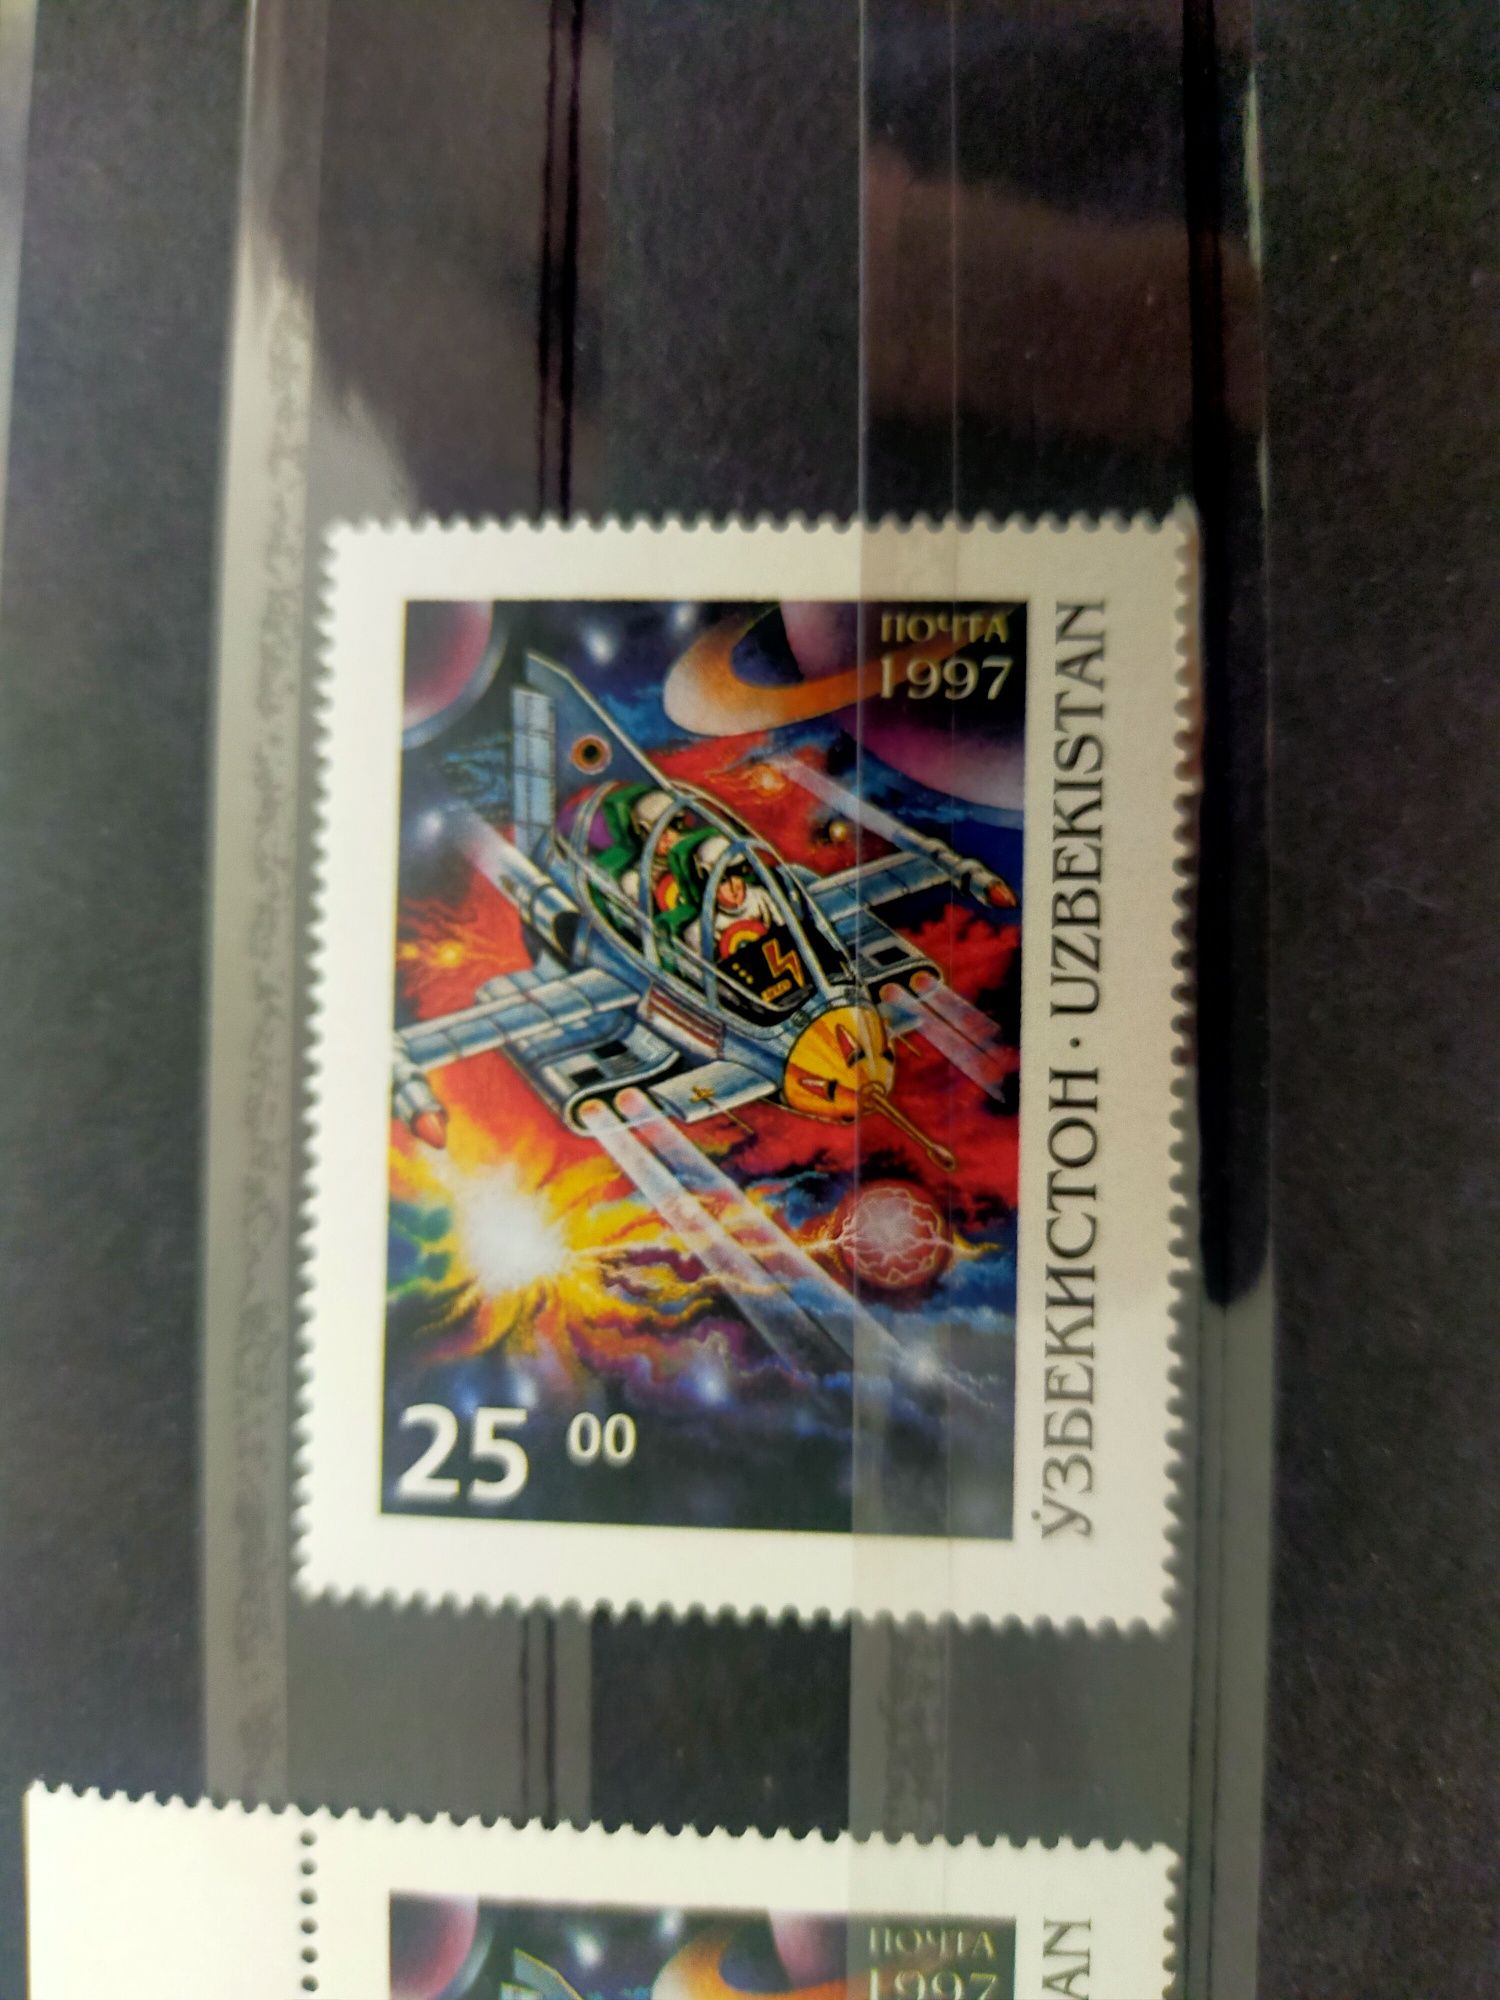 Серия почтовых марок - Космос и Фантазия, 1997 год, Узбекистан